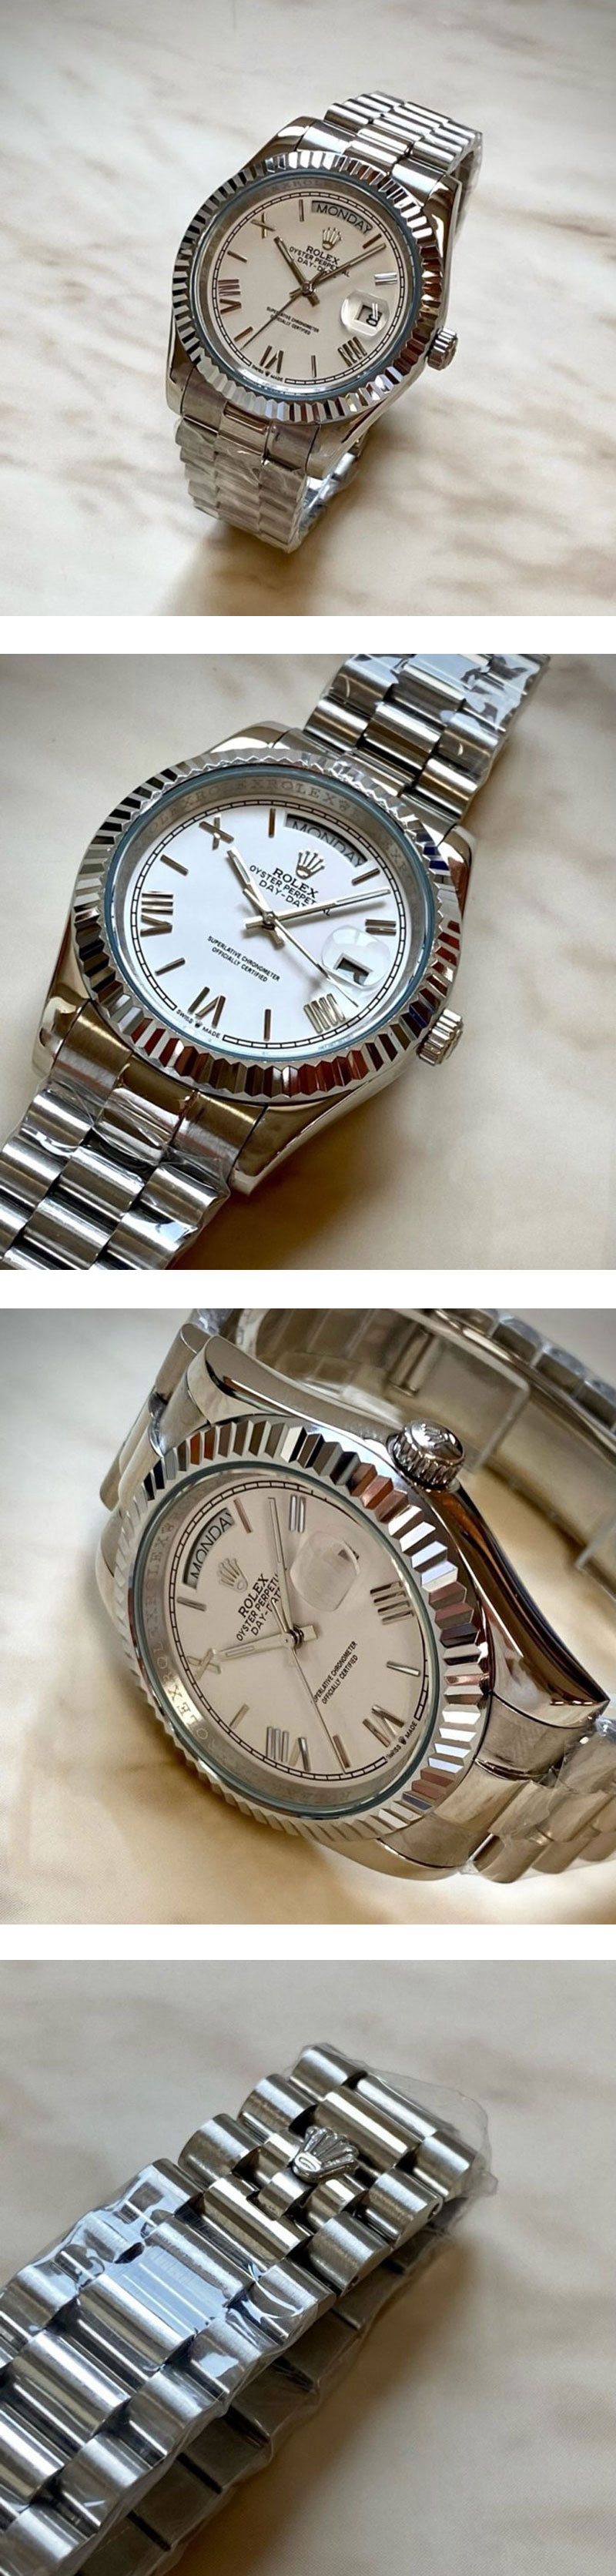 有名ブランドロレックススーパーコピー時計販売店 デイデイト ホワイト ロマン 228239 40mm